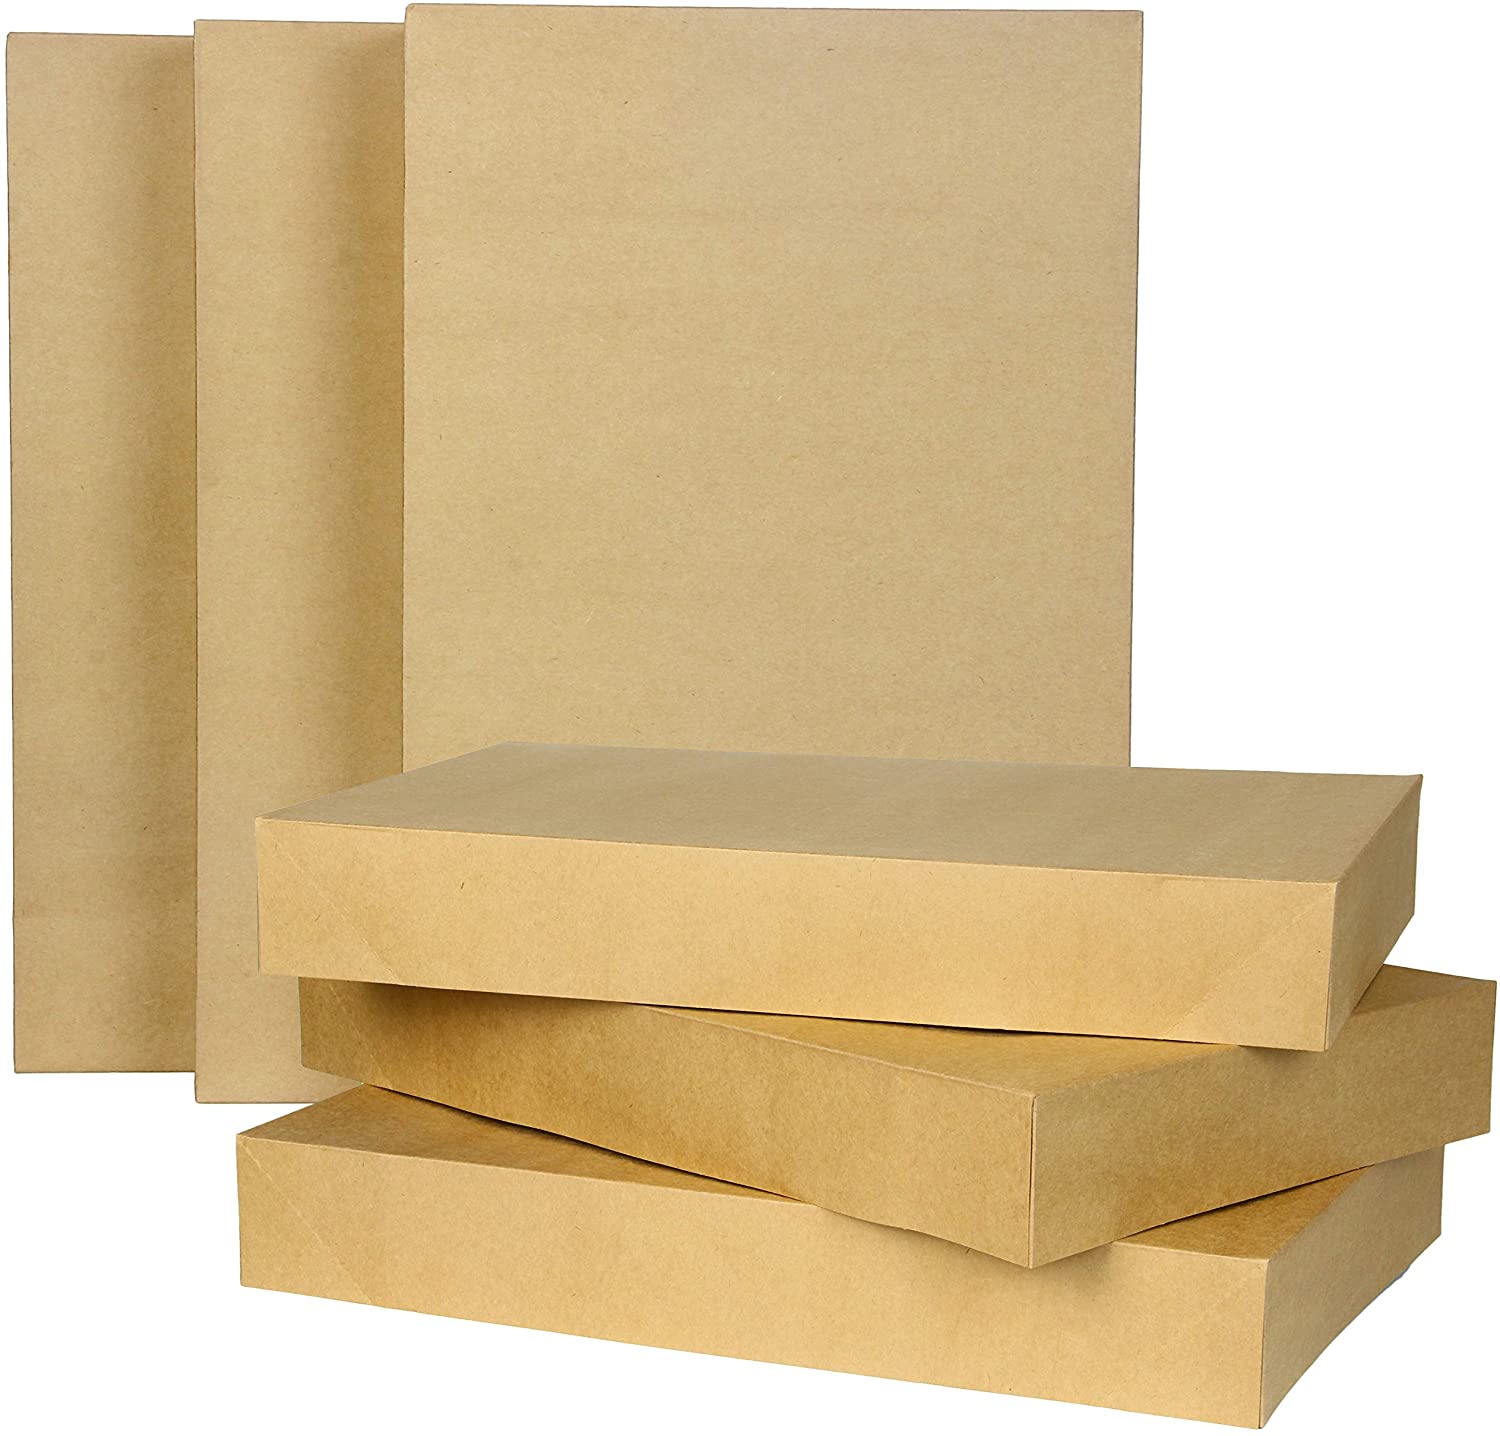 Brown Kraft Cardboard Boxes Gift Wrap - lafiestadowntownla